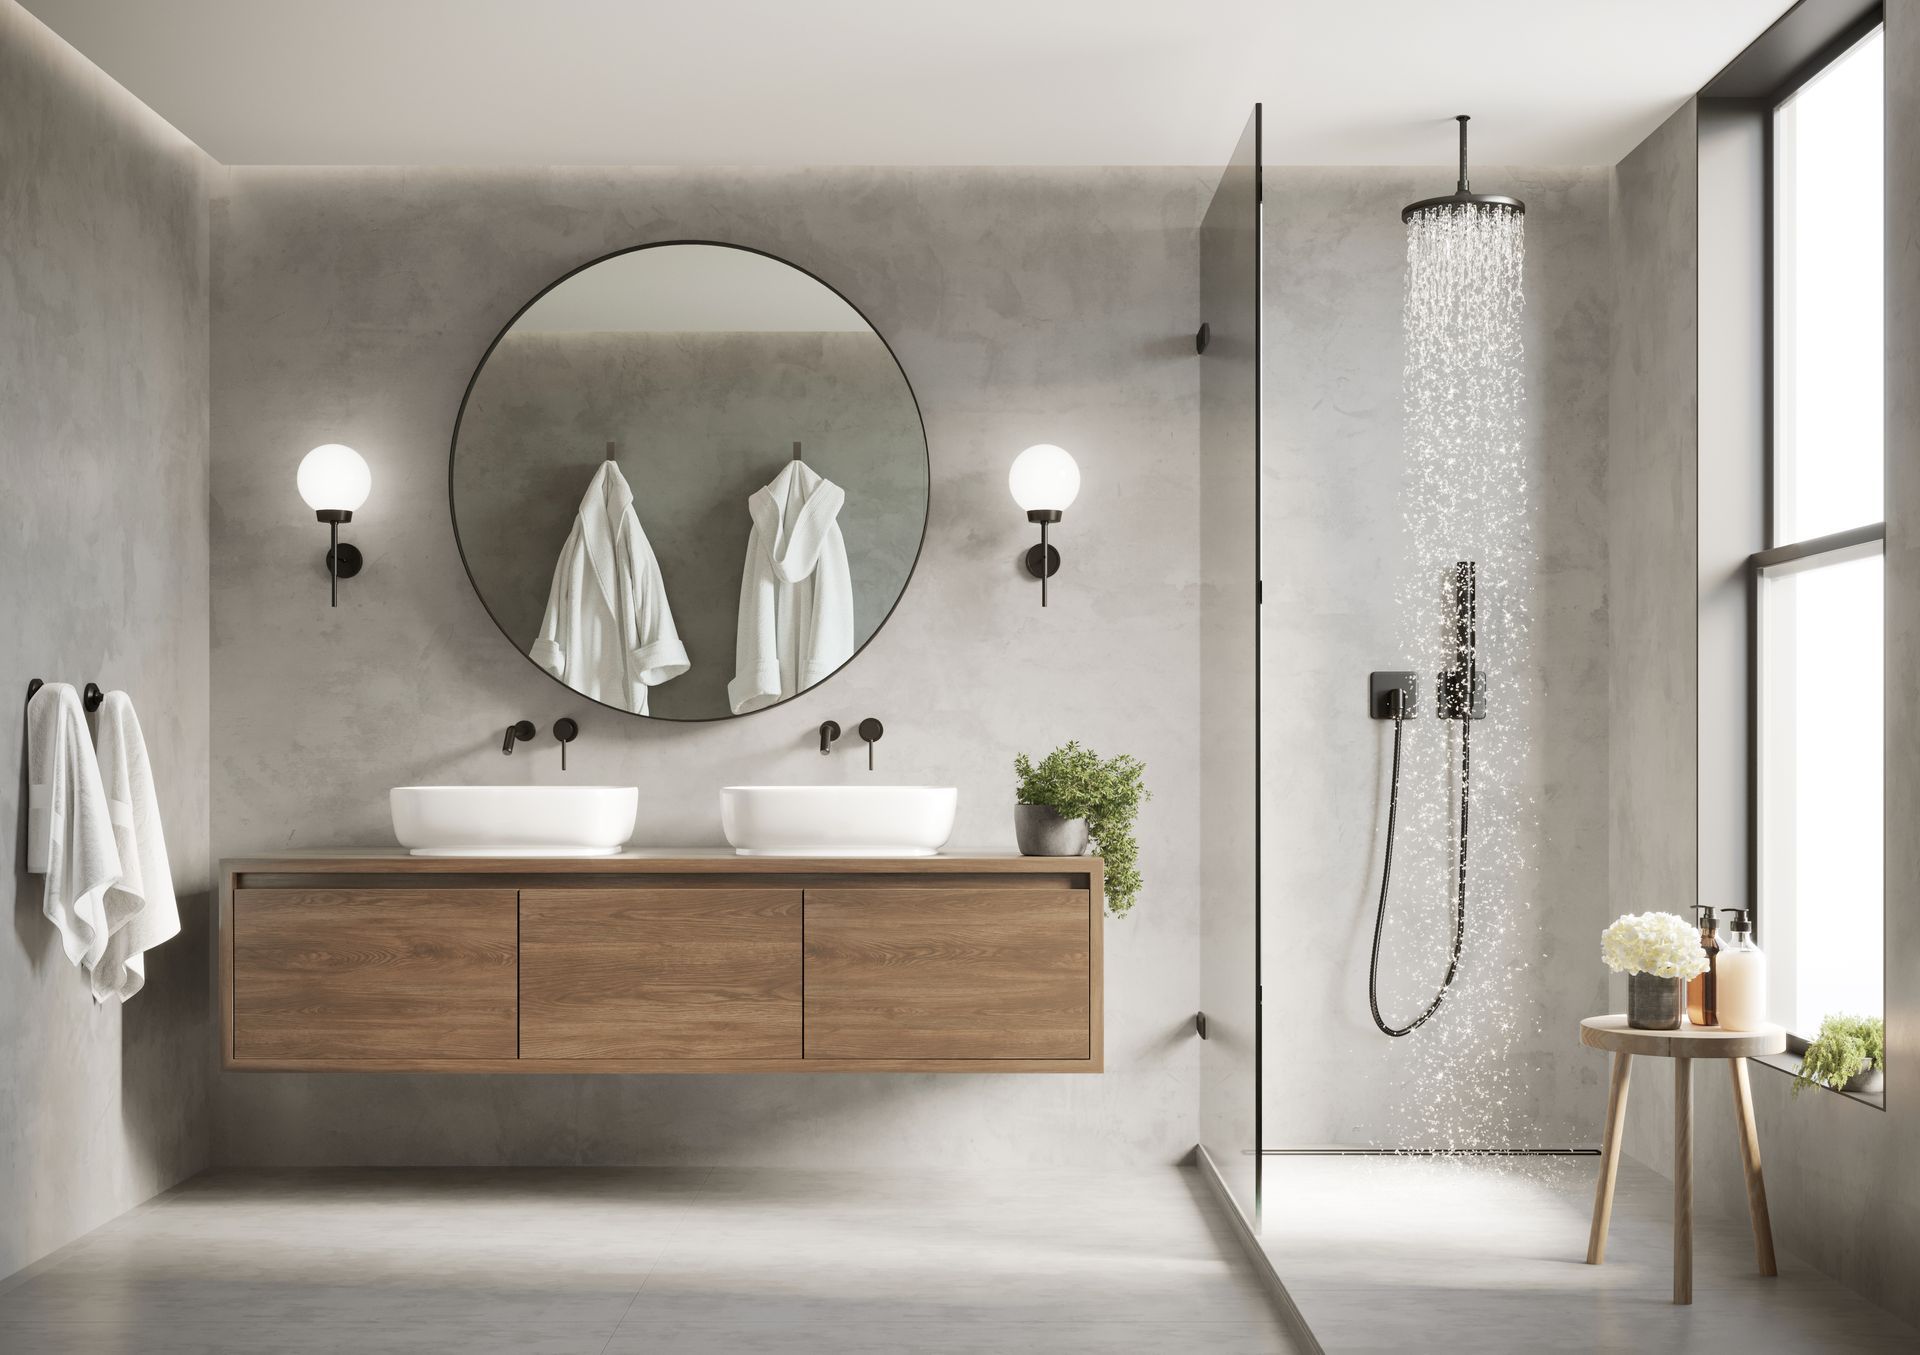 Salle de bains avec douche et grand miroir circulaire sur le mur